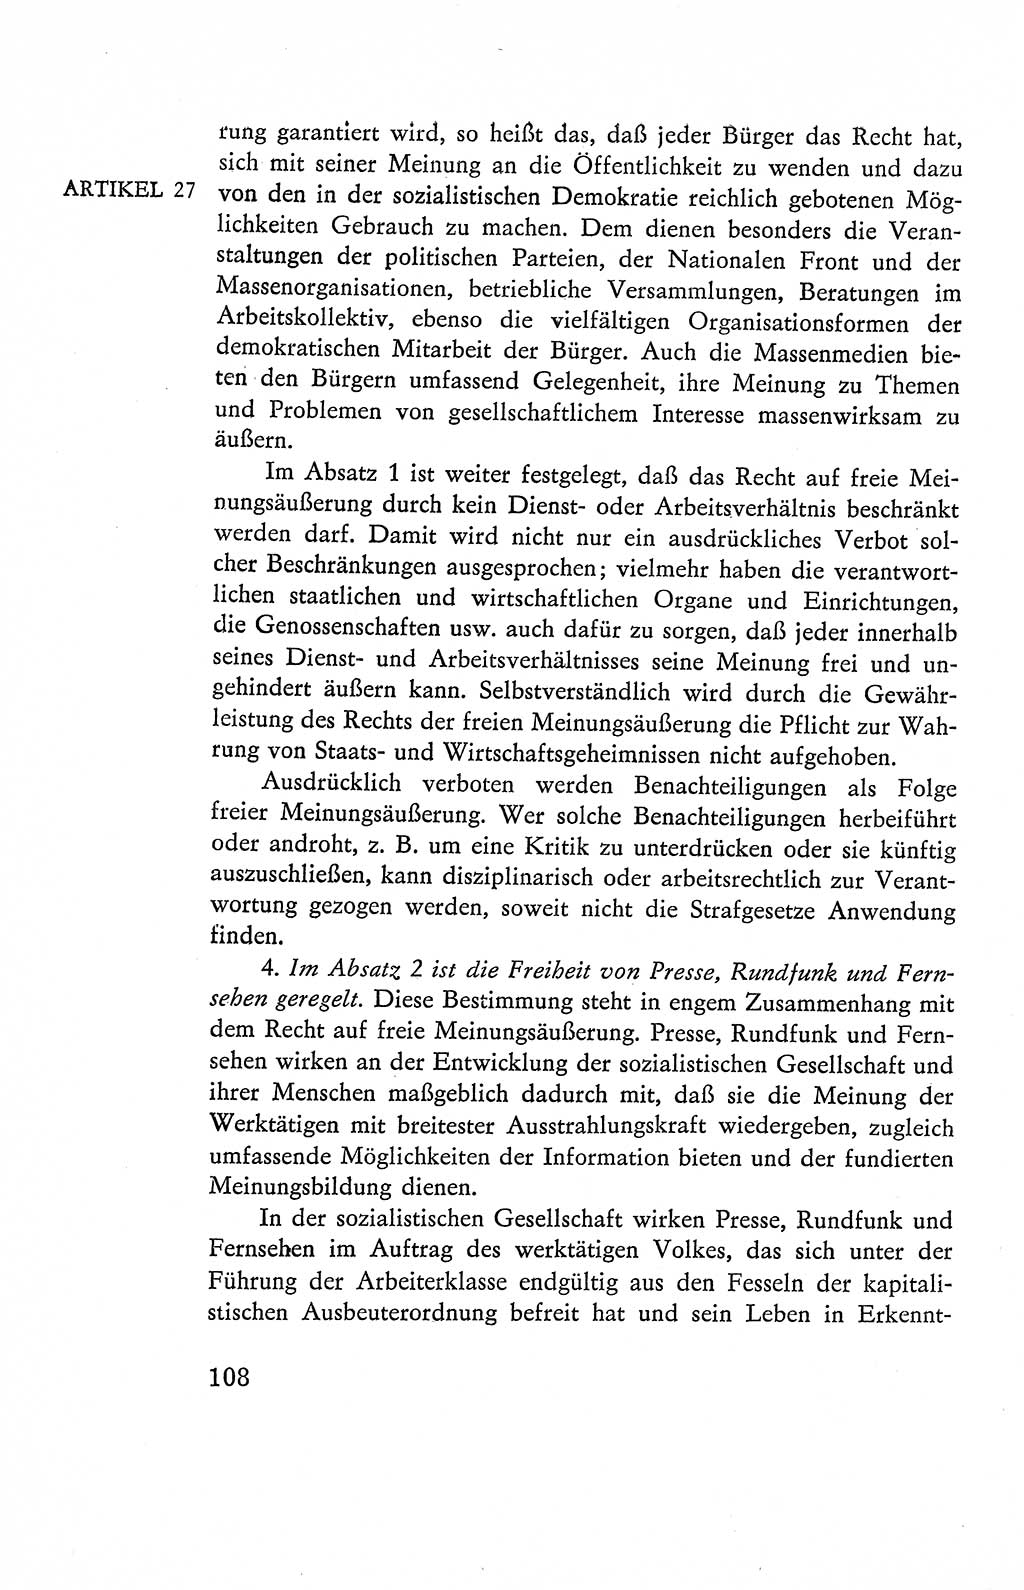 Verfassung der Deutschen Demokratischen Republik (DDR), Dokumente, Kommentar 1969, Band 2, Seite 108 (Verf. DDR Dok. Komm. 1969, Bd. 2, S. 108)